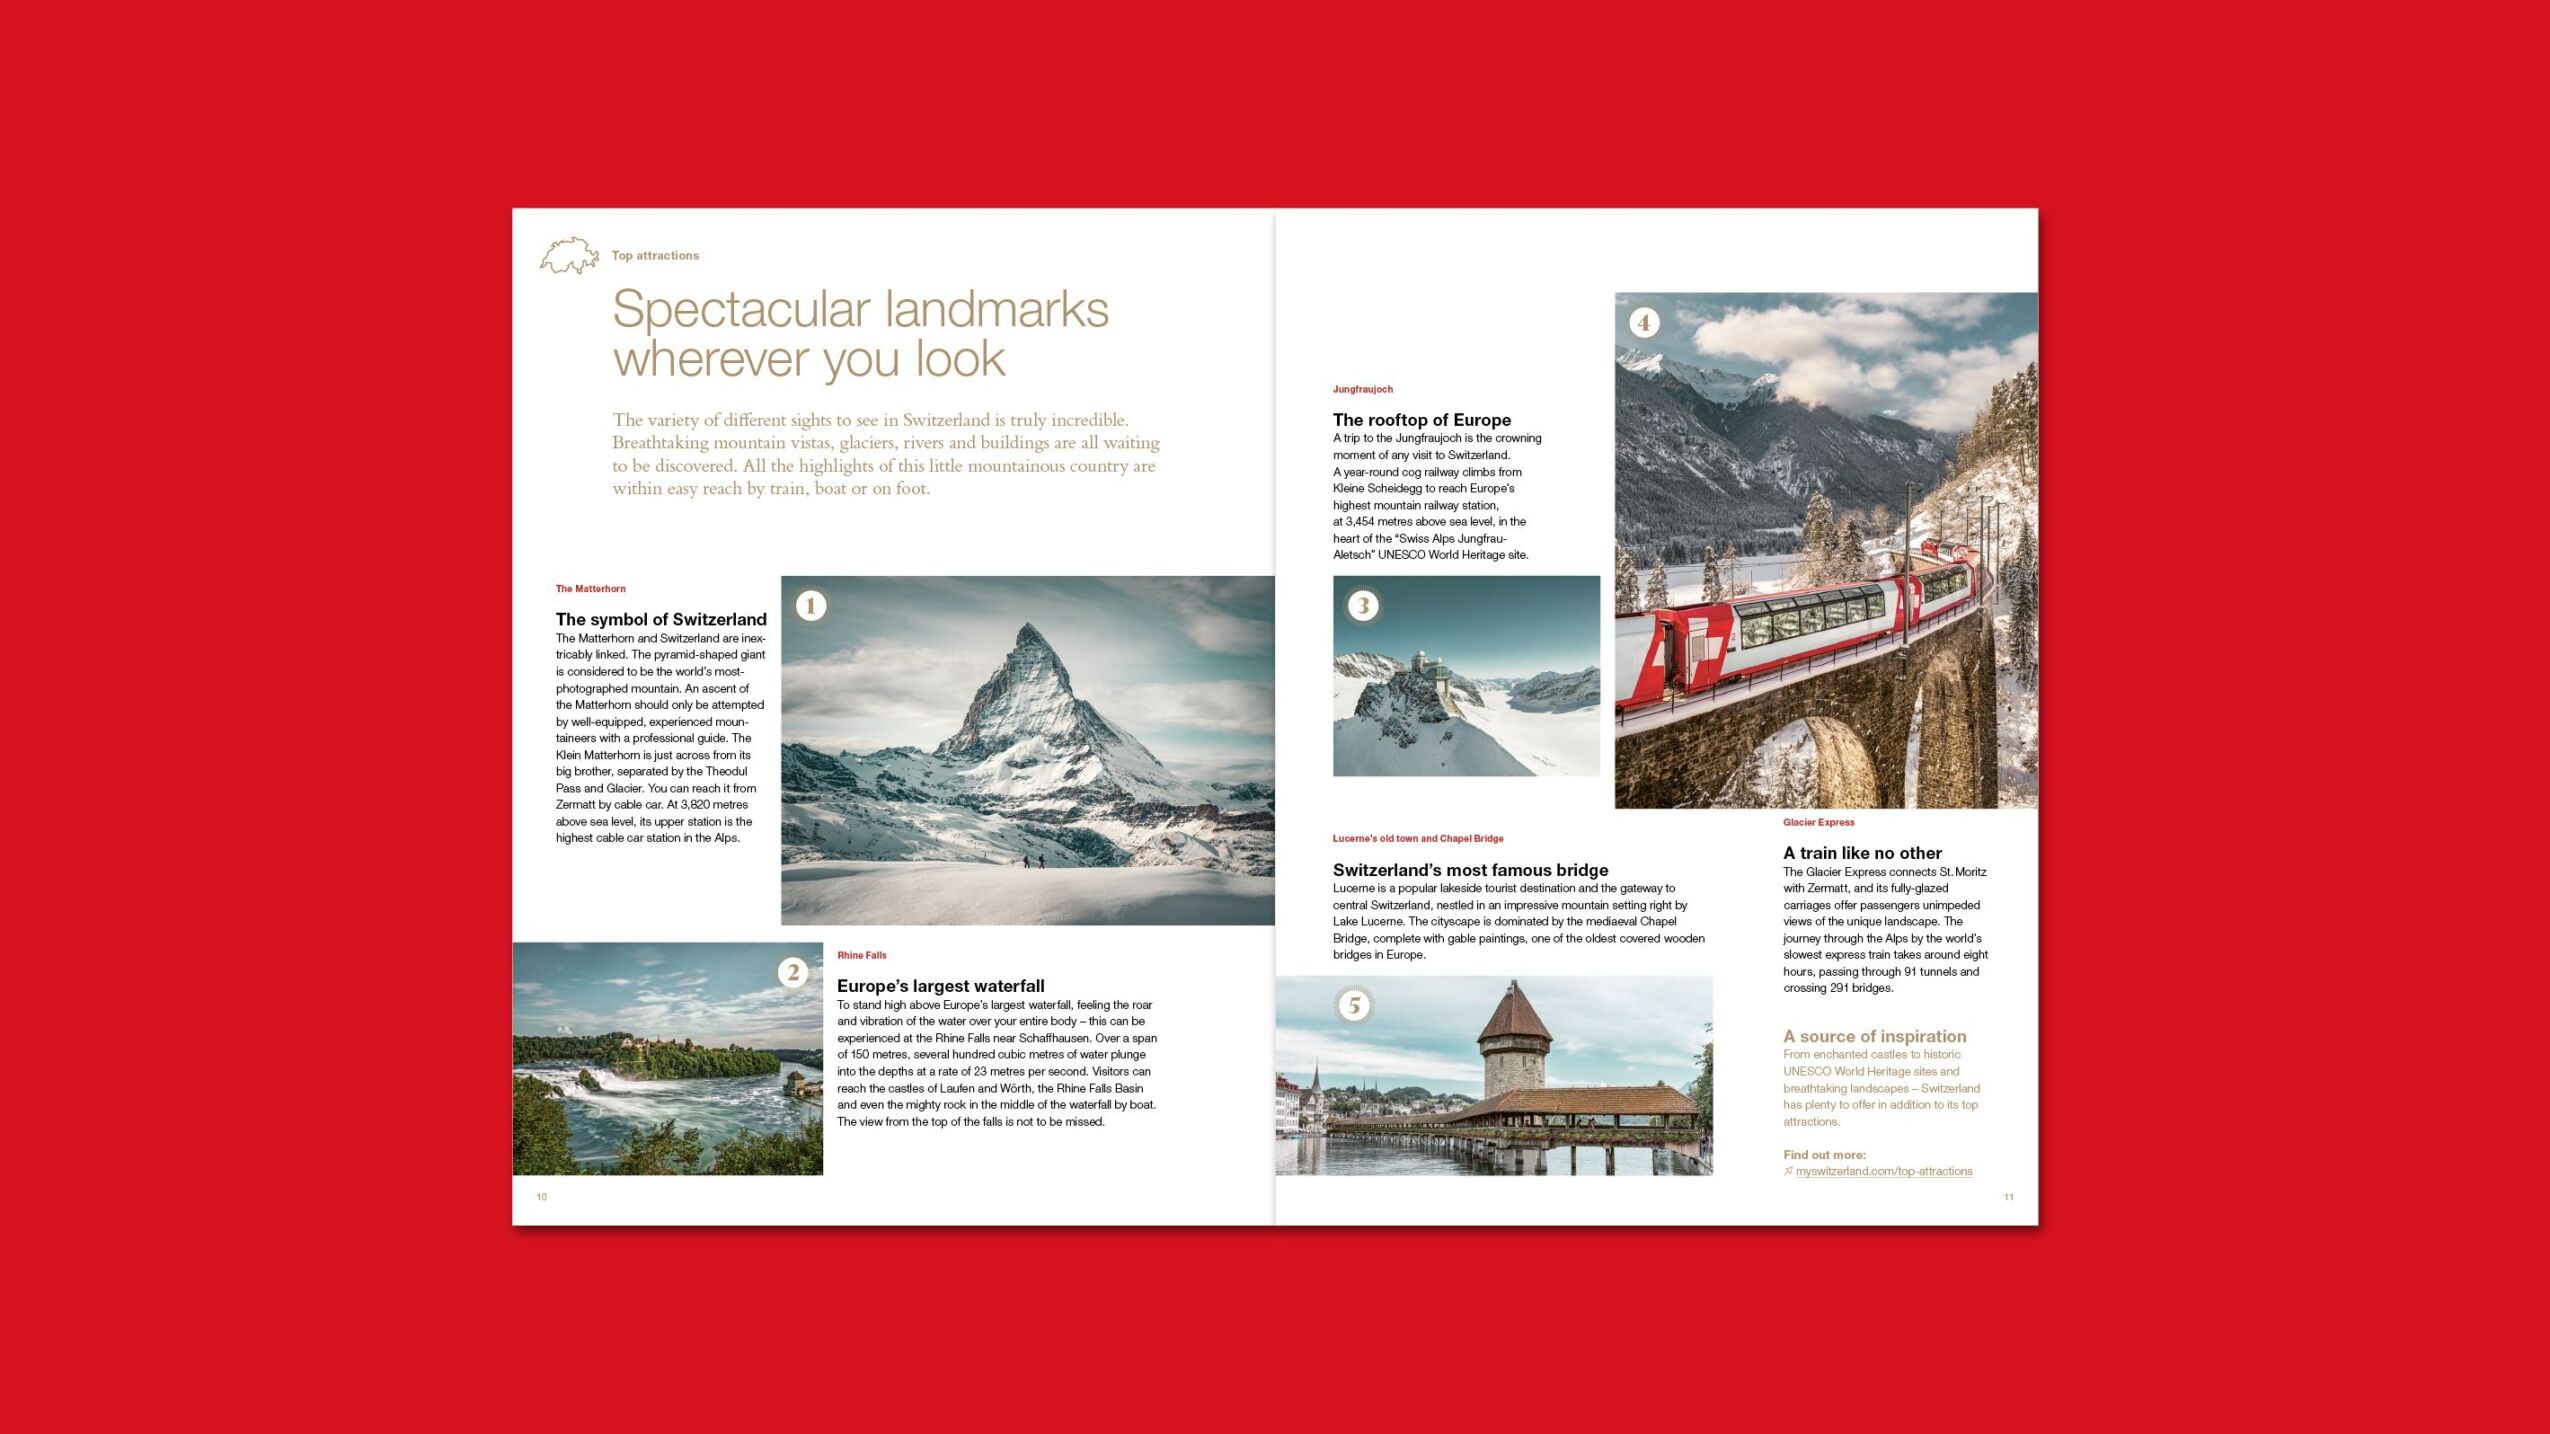 Health Magazine von Schweiz Tourismus